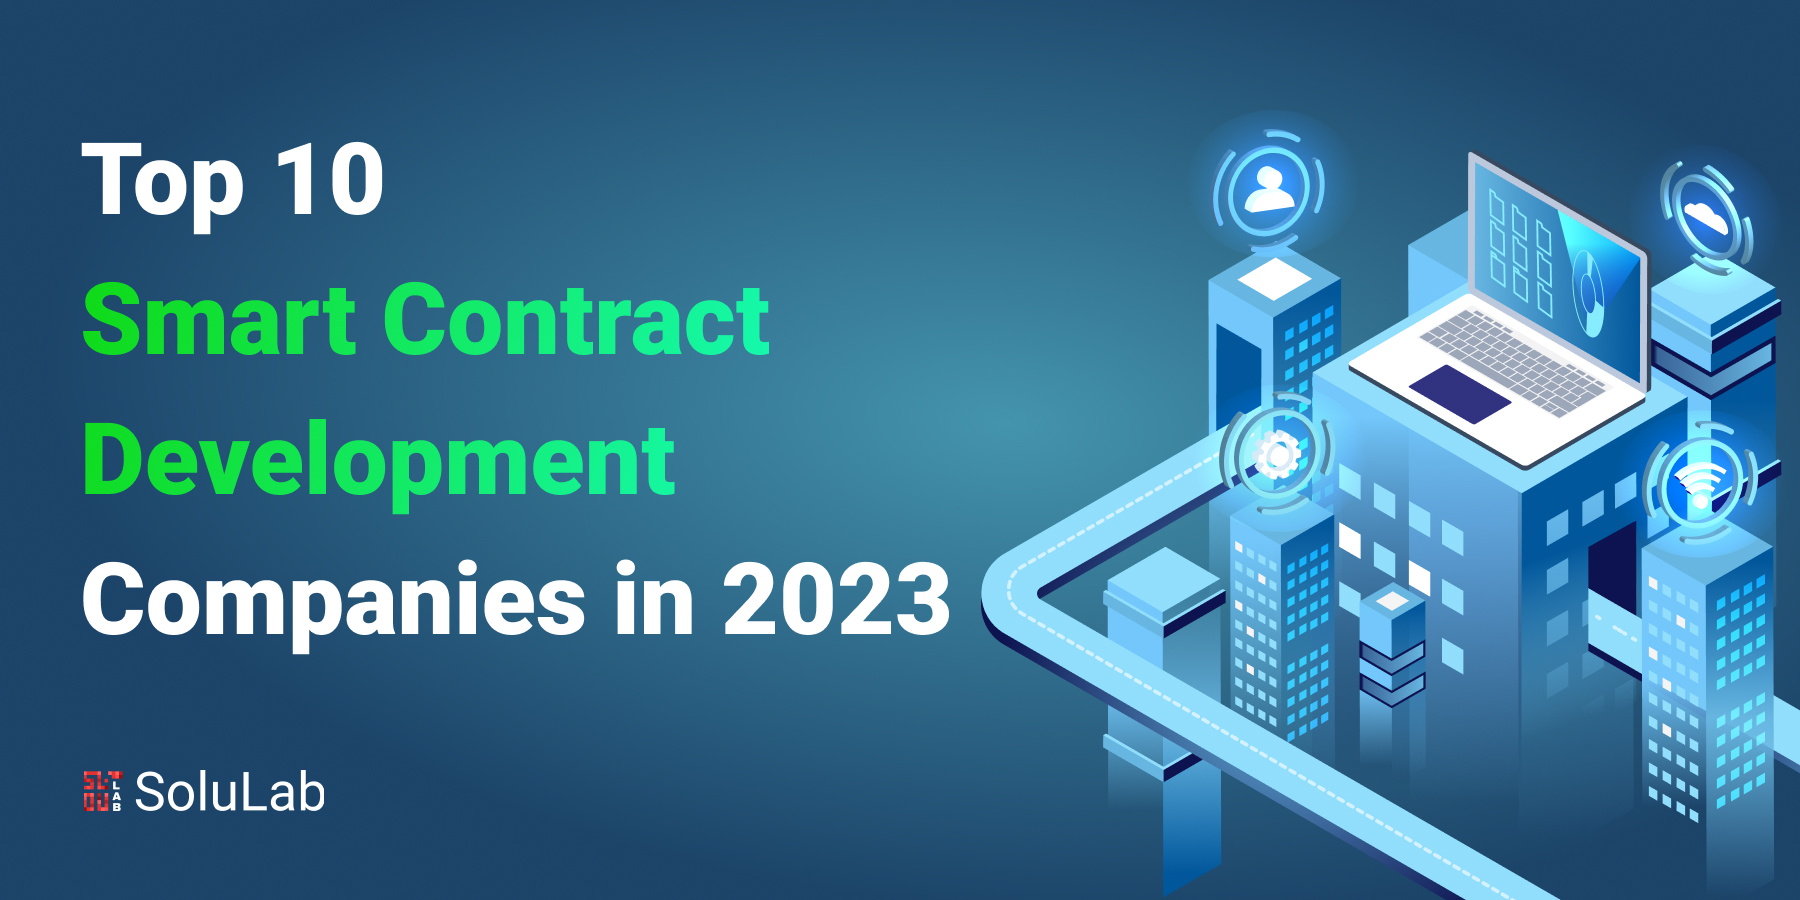 Top 10 Smart Contract Development Companies in 2023